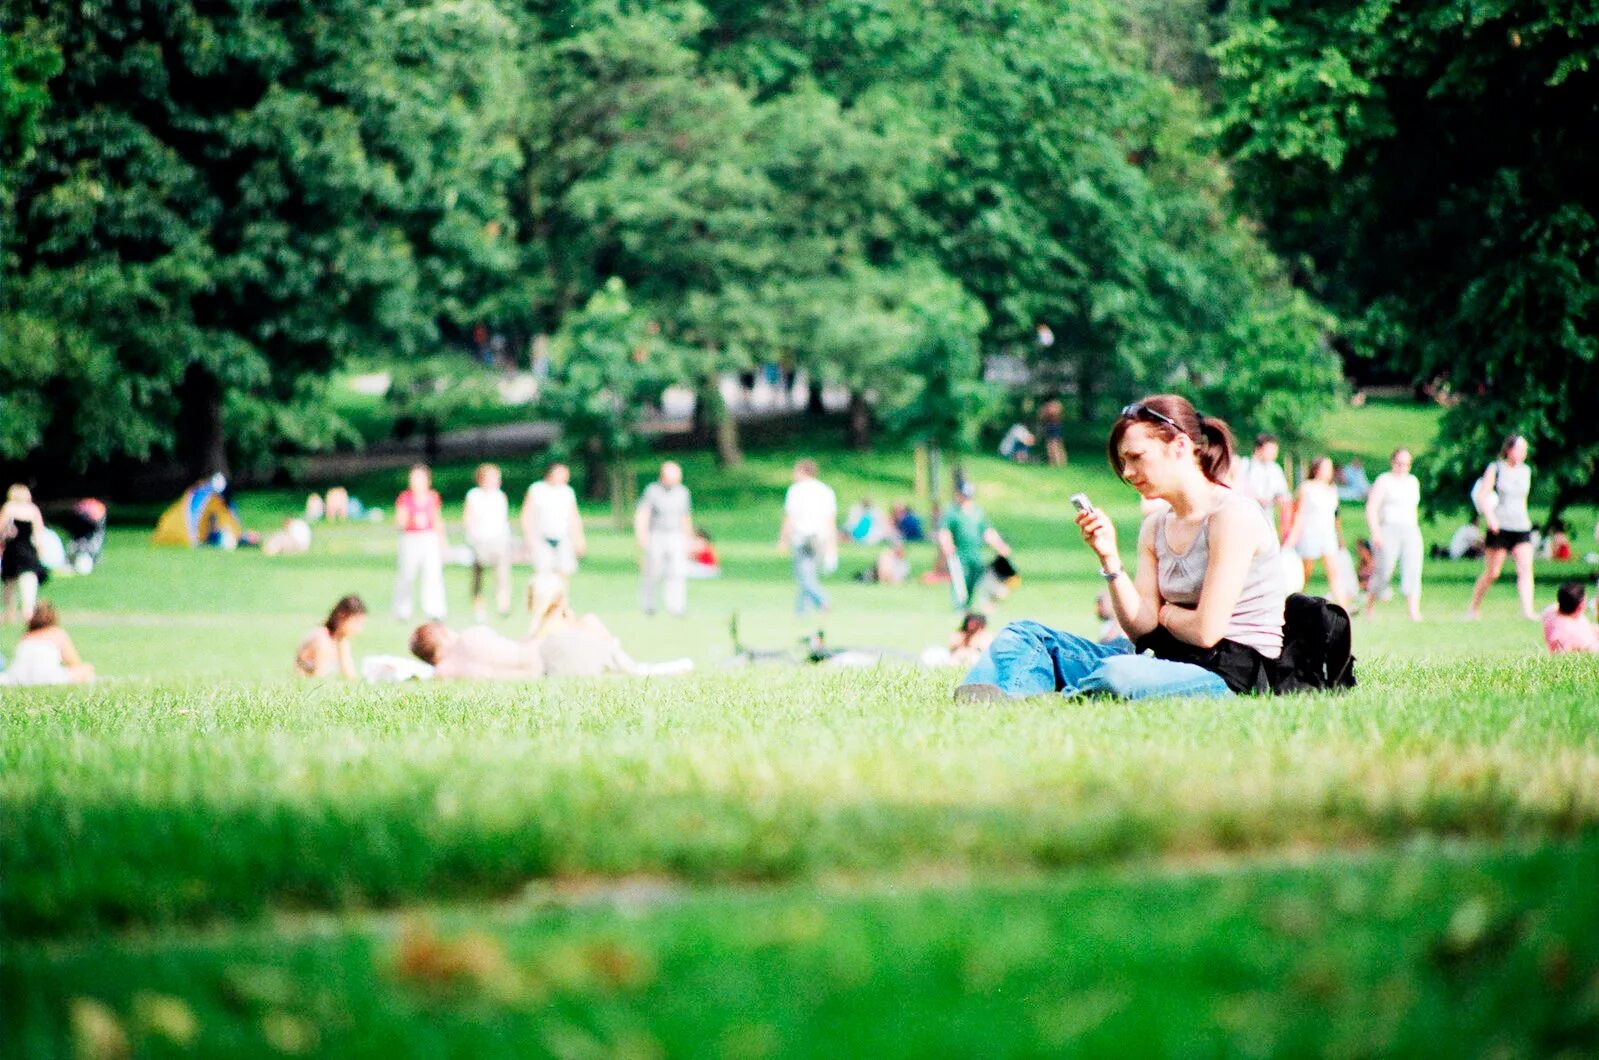 Природы в общественных местах. Люди в парке. Люди отдыхают в парке. Люди в парке летом. Люди на лужайке в парке.